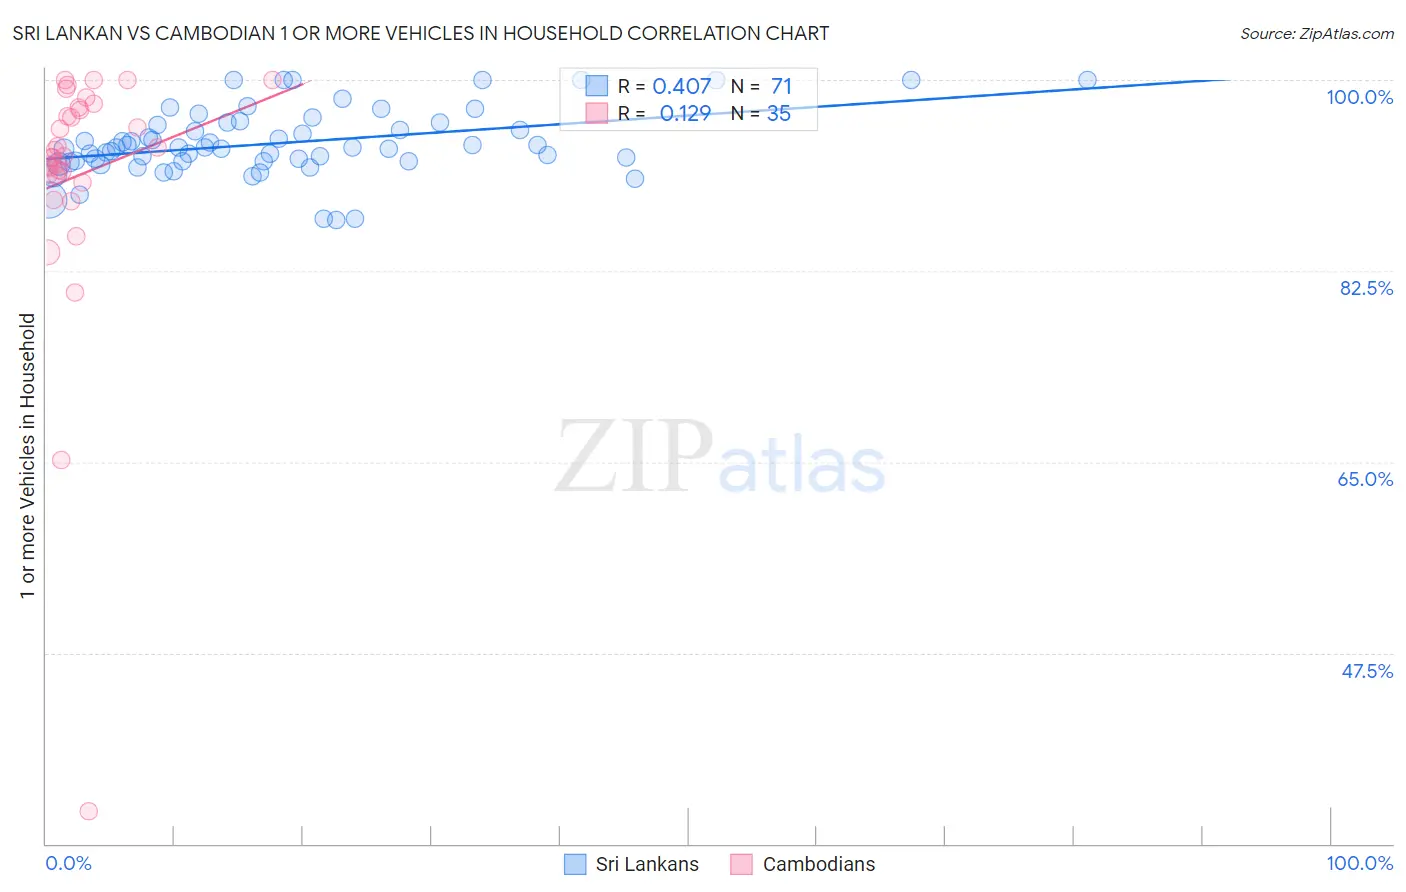 Sri Lankan vs Cambodian 1 or more Vehicles in Household